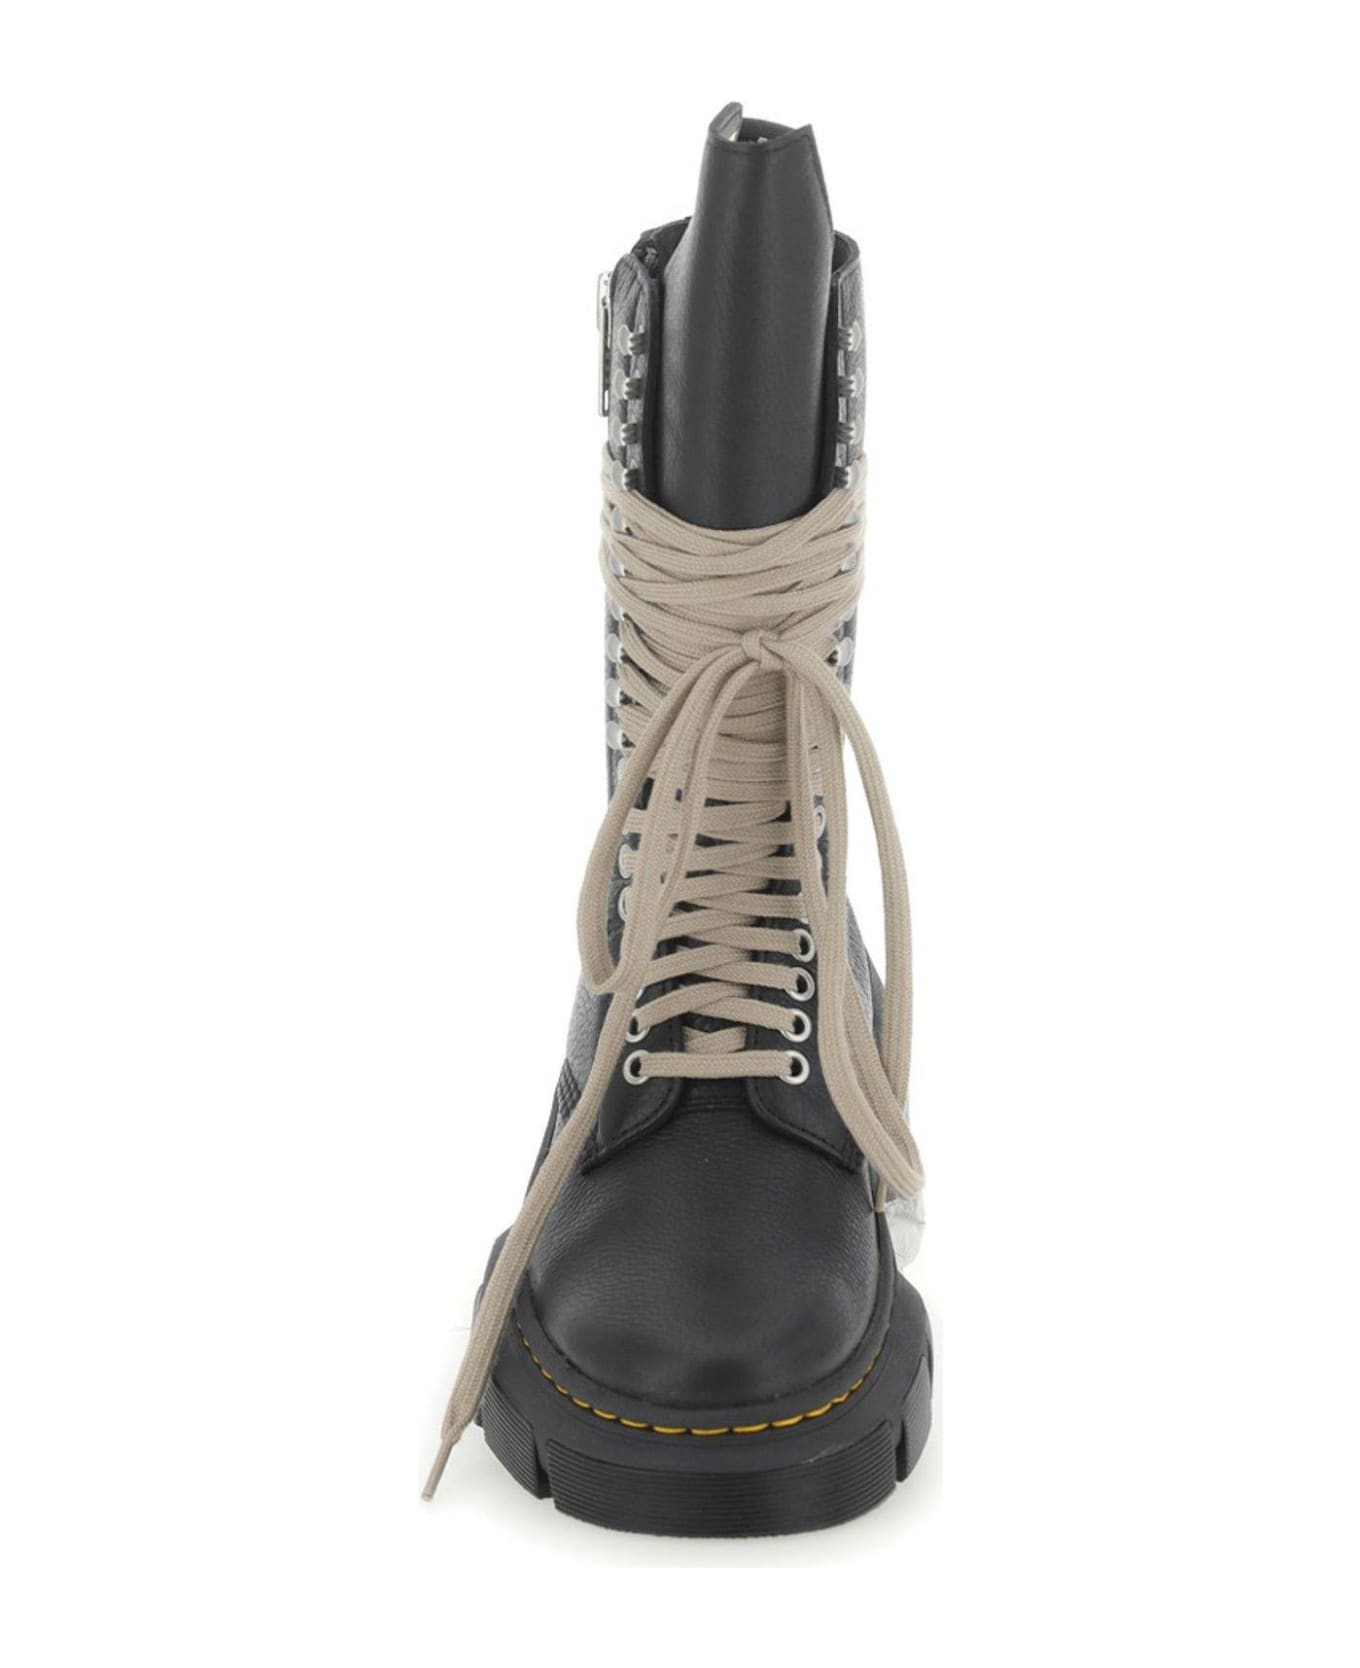 Rick Owens x Dr. Martens X Dr. Martens 1918 Dmxl Calf Length Boots - BLACK ブーツ